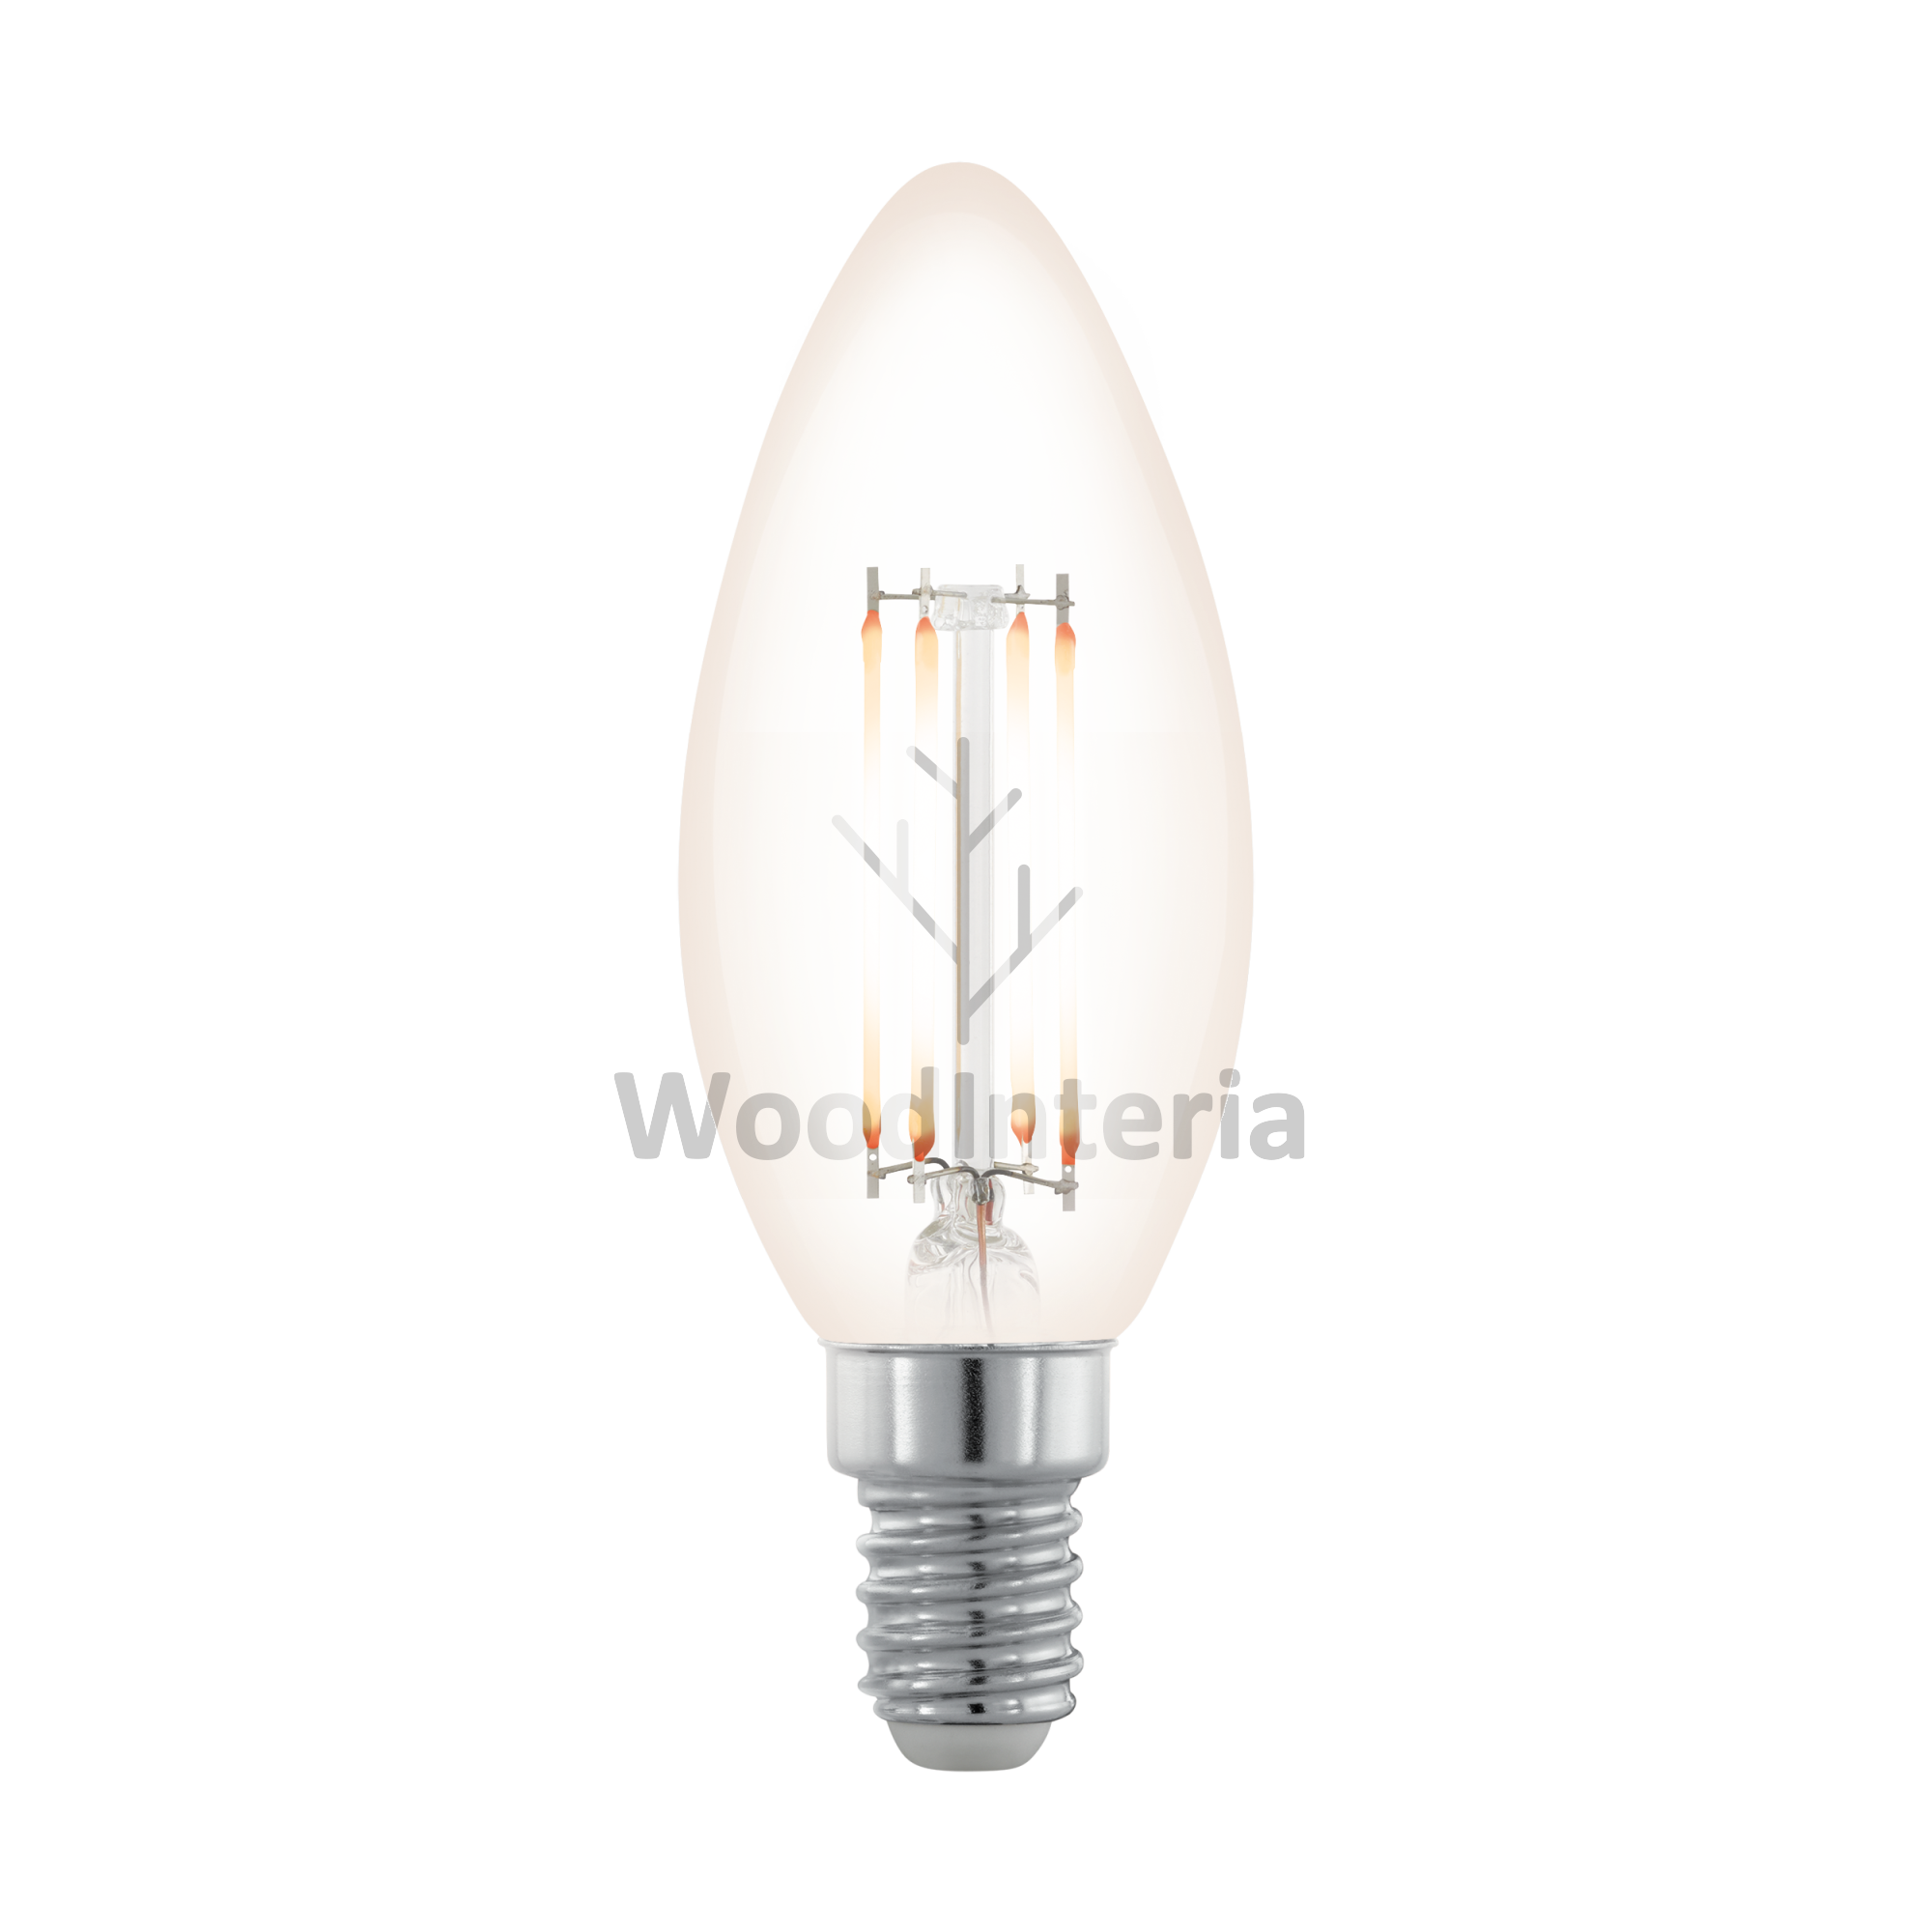 фото лампочка clean bulb northern lights #19 в скандинавском интерьере лофт эко | WoodInteria